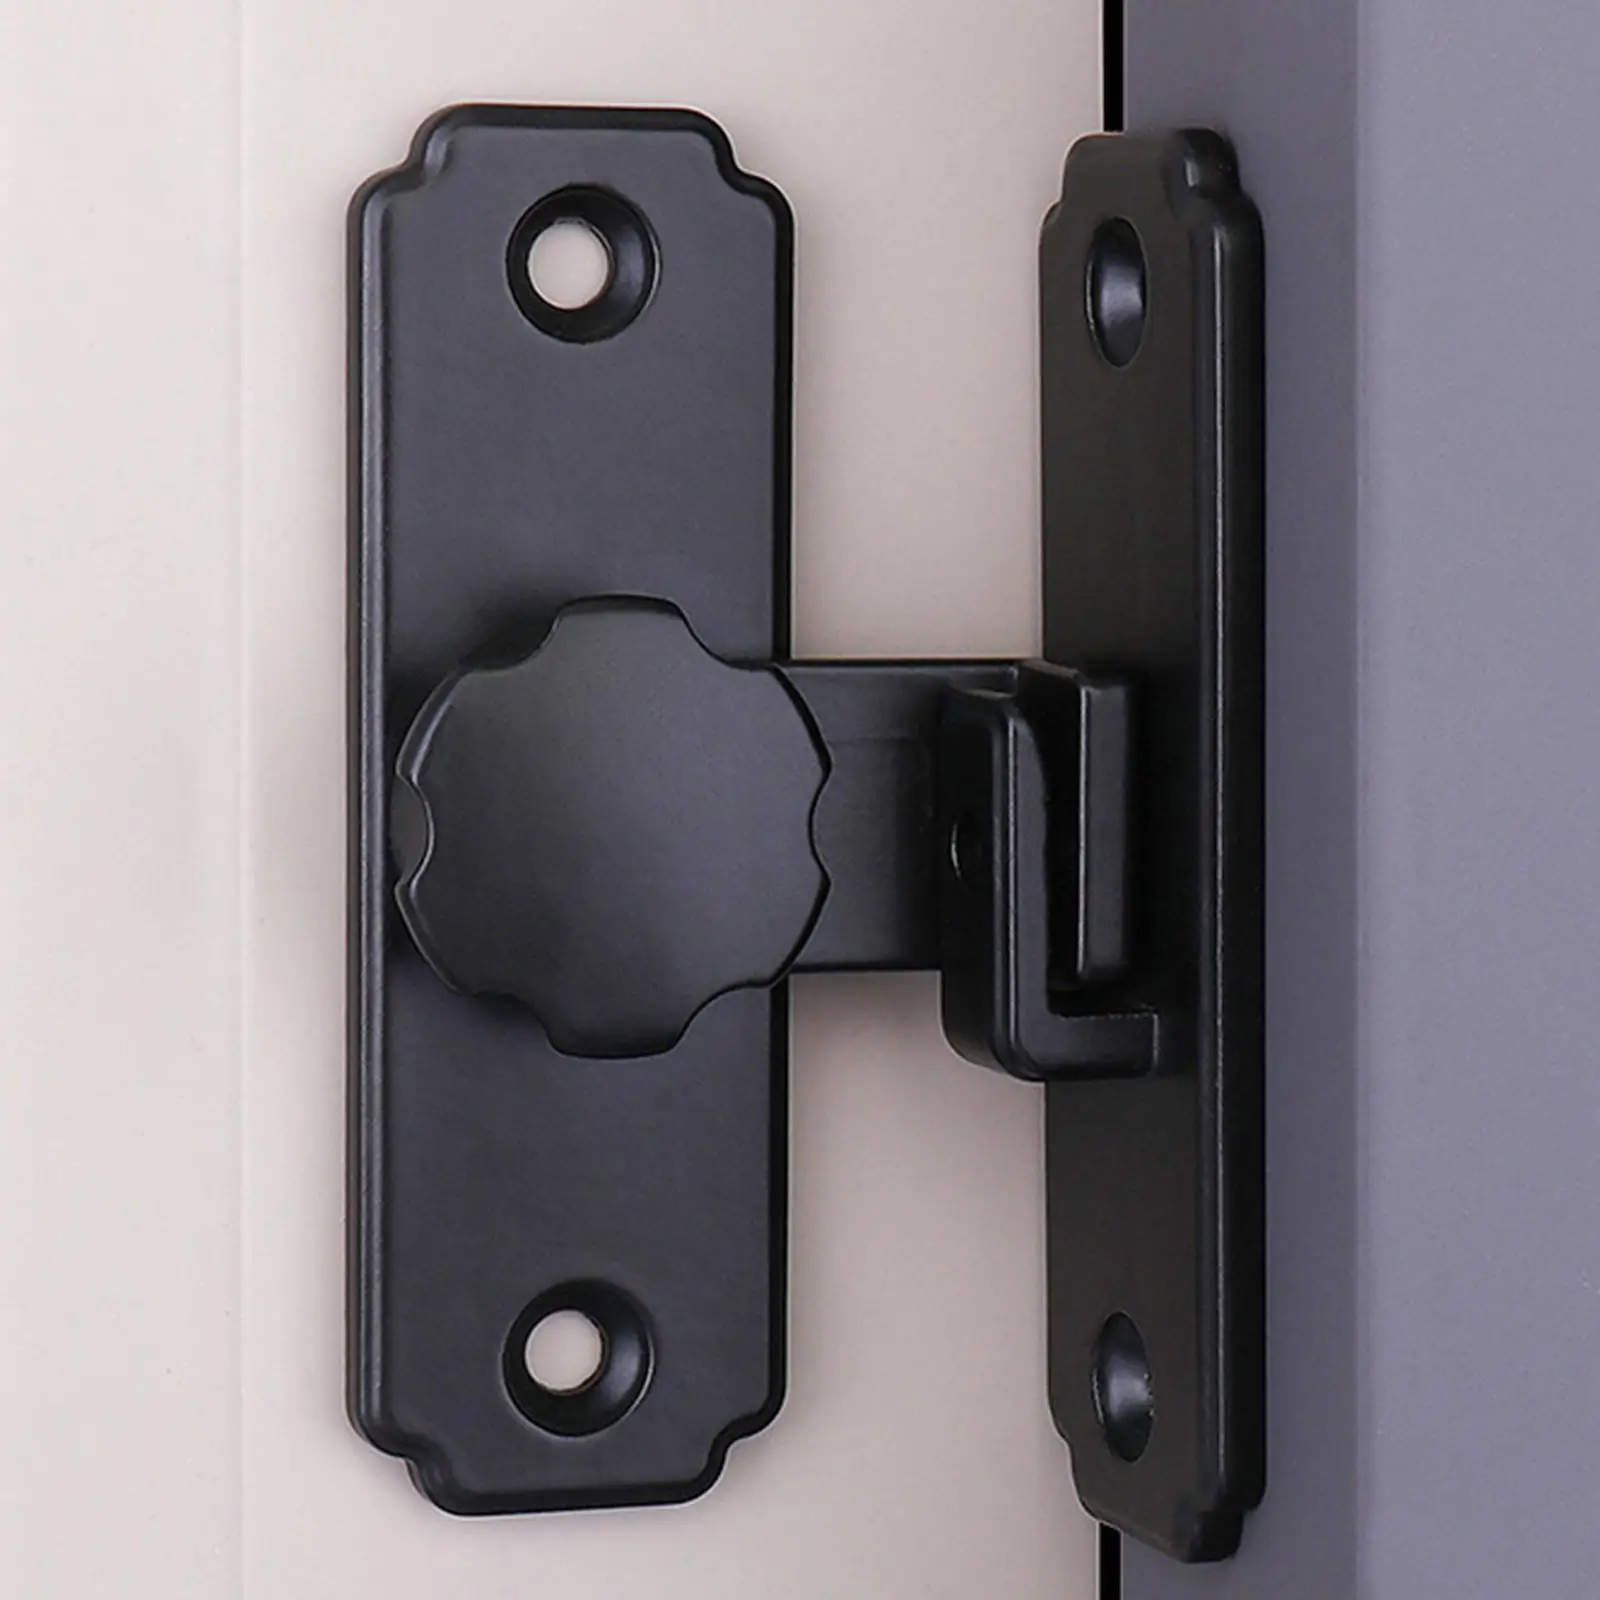 Durable Barn Sliding Door Buckle Latch Lock with Screws 90 Degree Hasps Lock for Outdoor Garden Garage Accessories Hardware